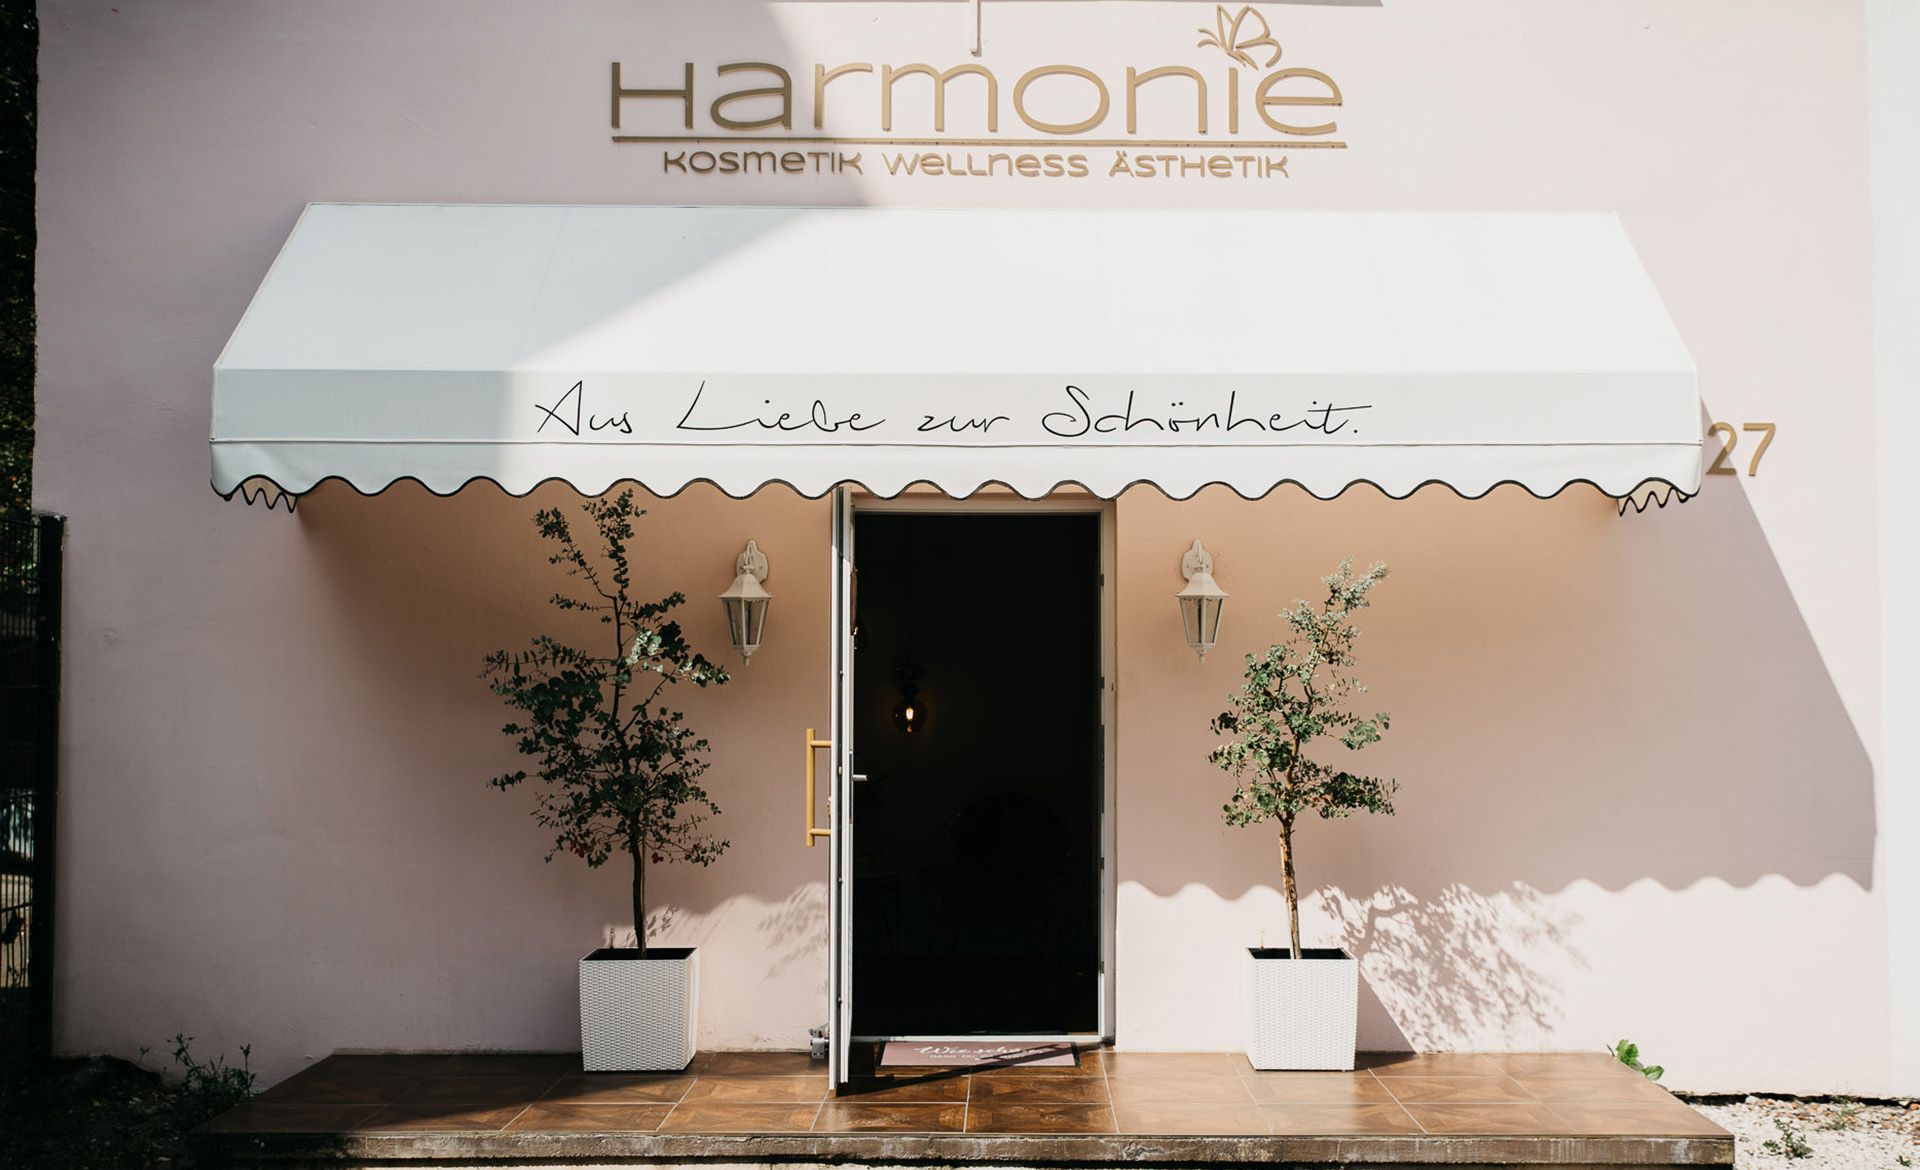 Harmonie - Kosmetik, Wellness, Ästhetik